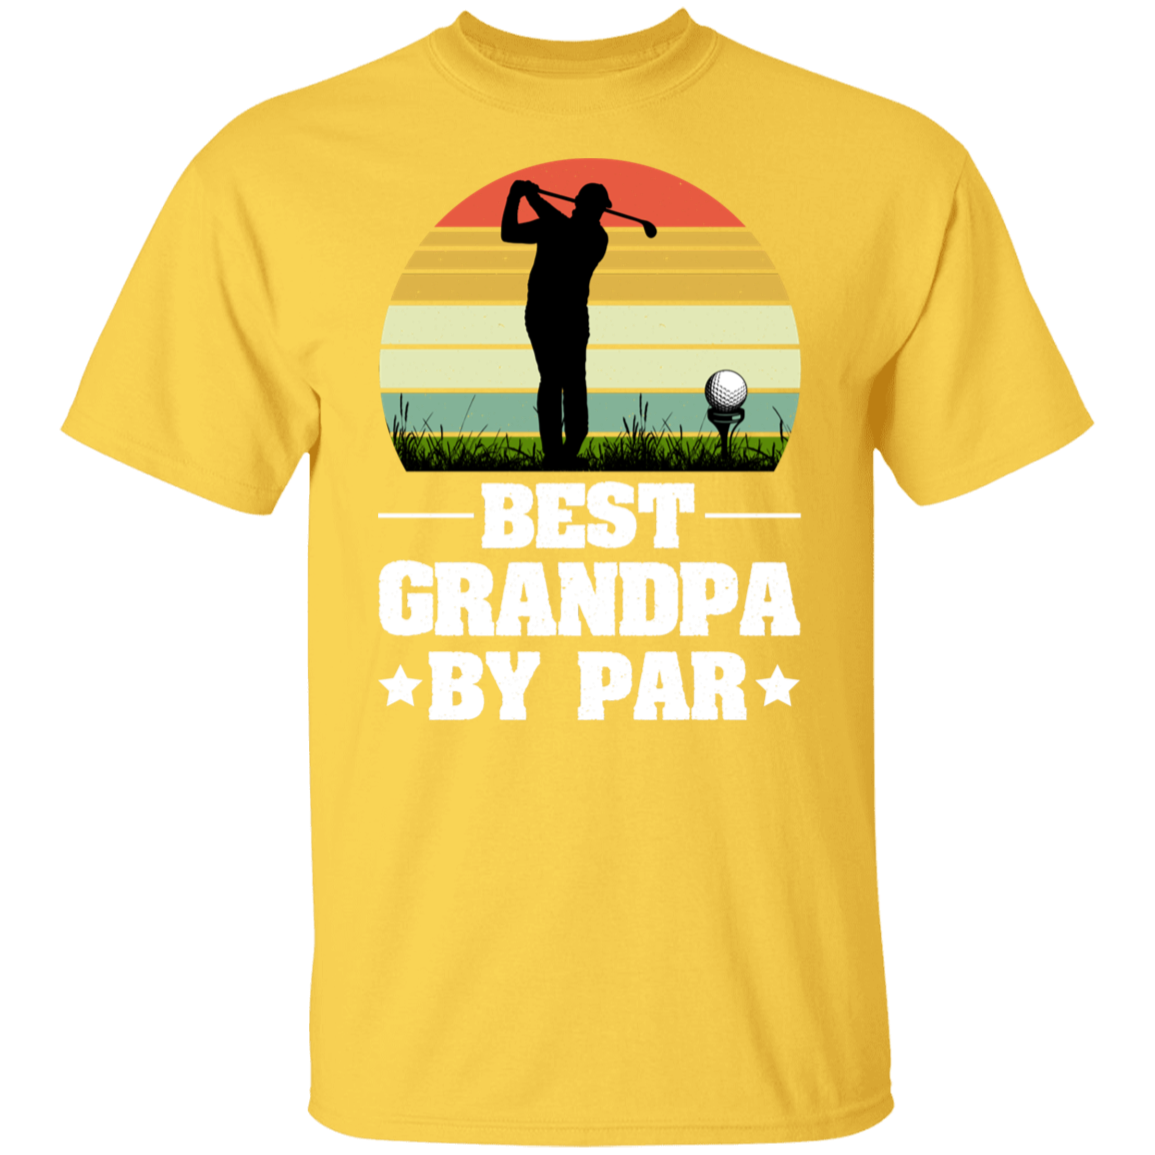 Best Grandpa by Par